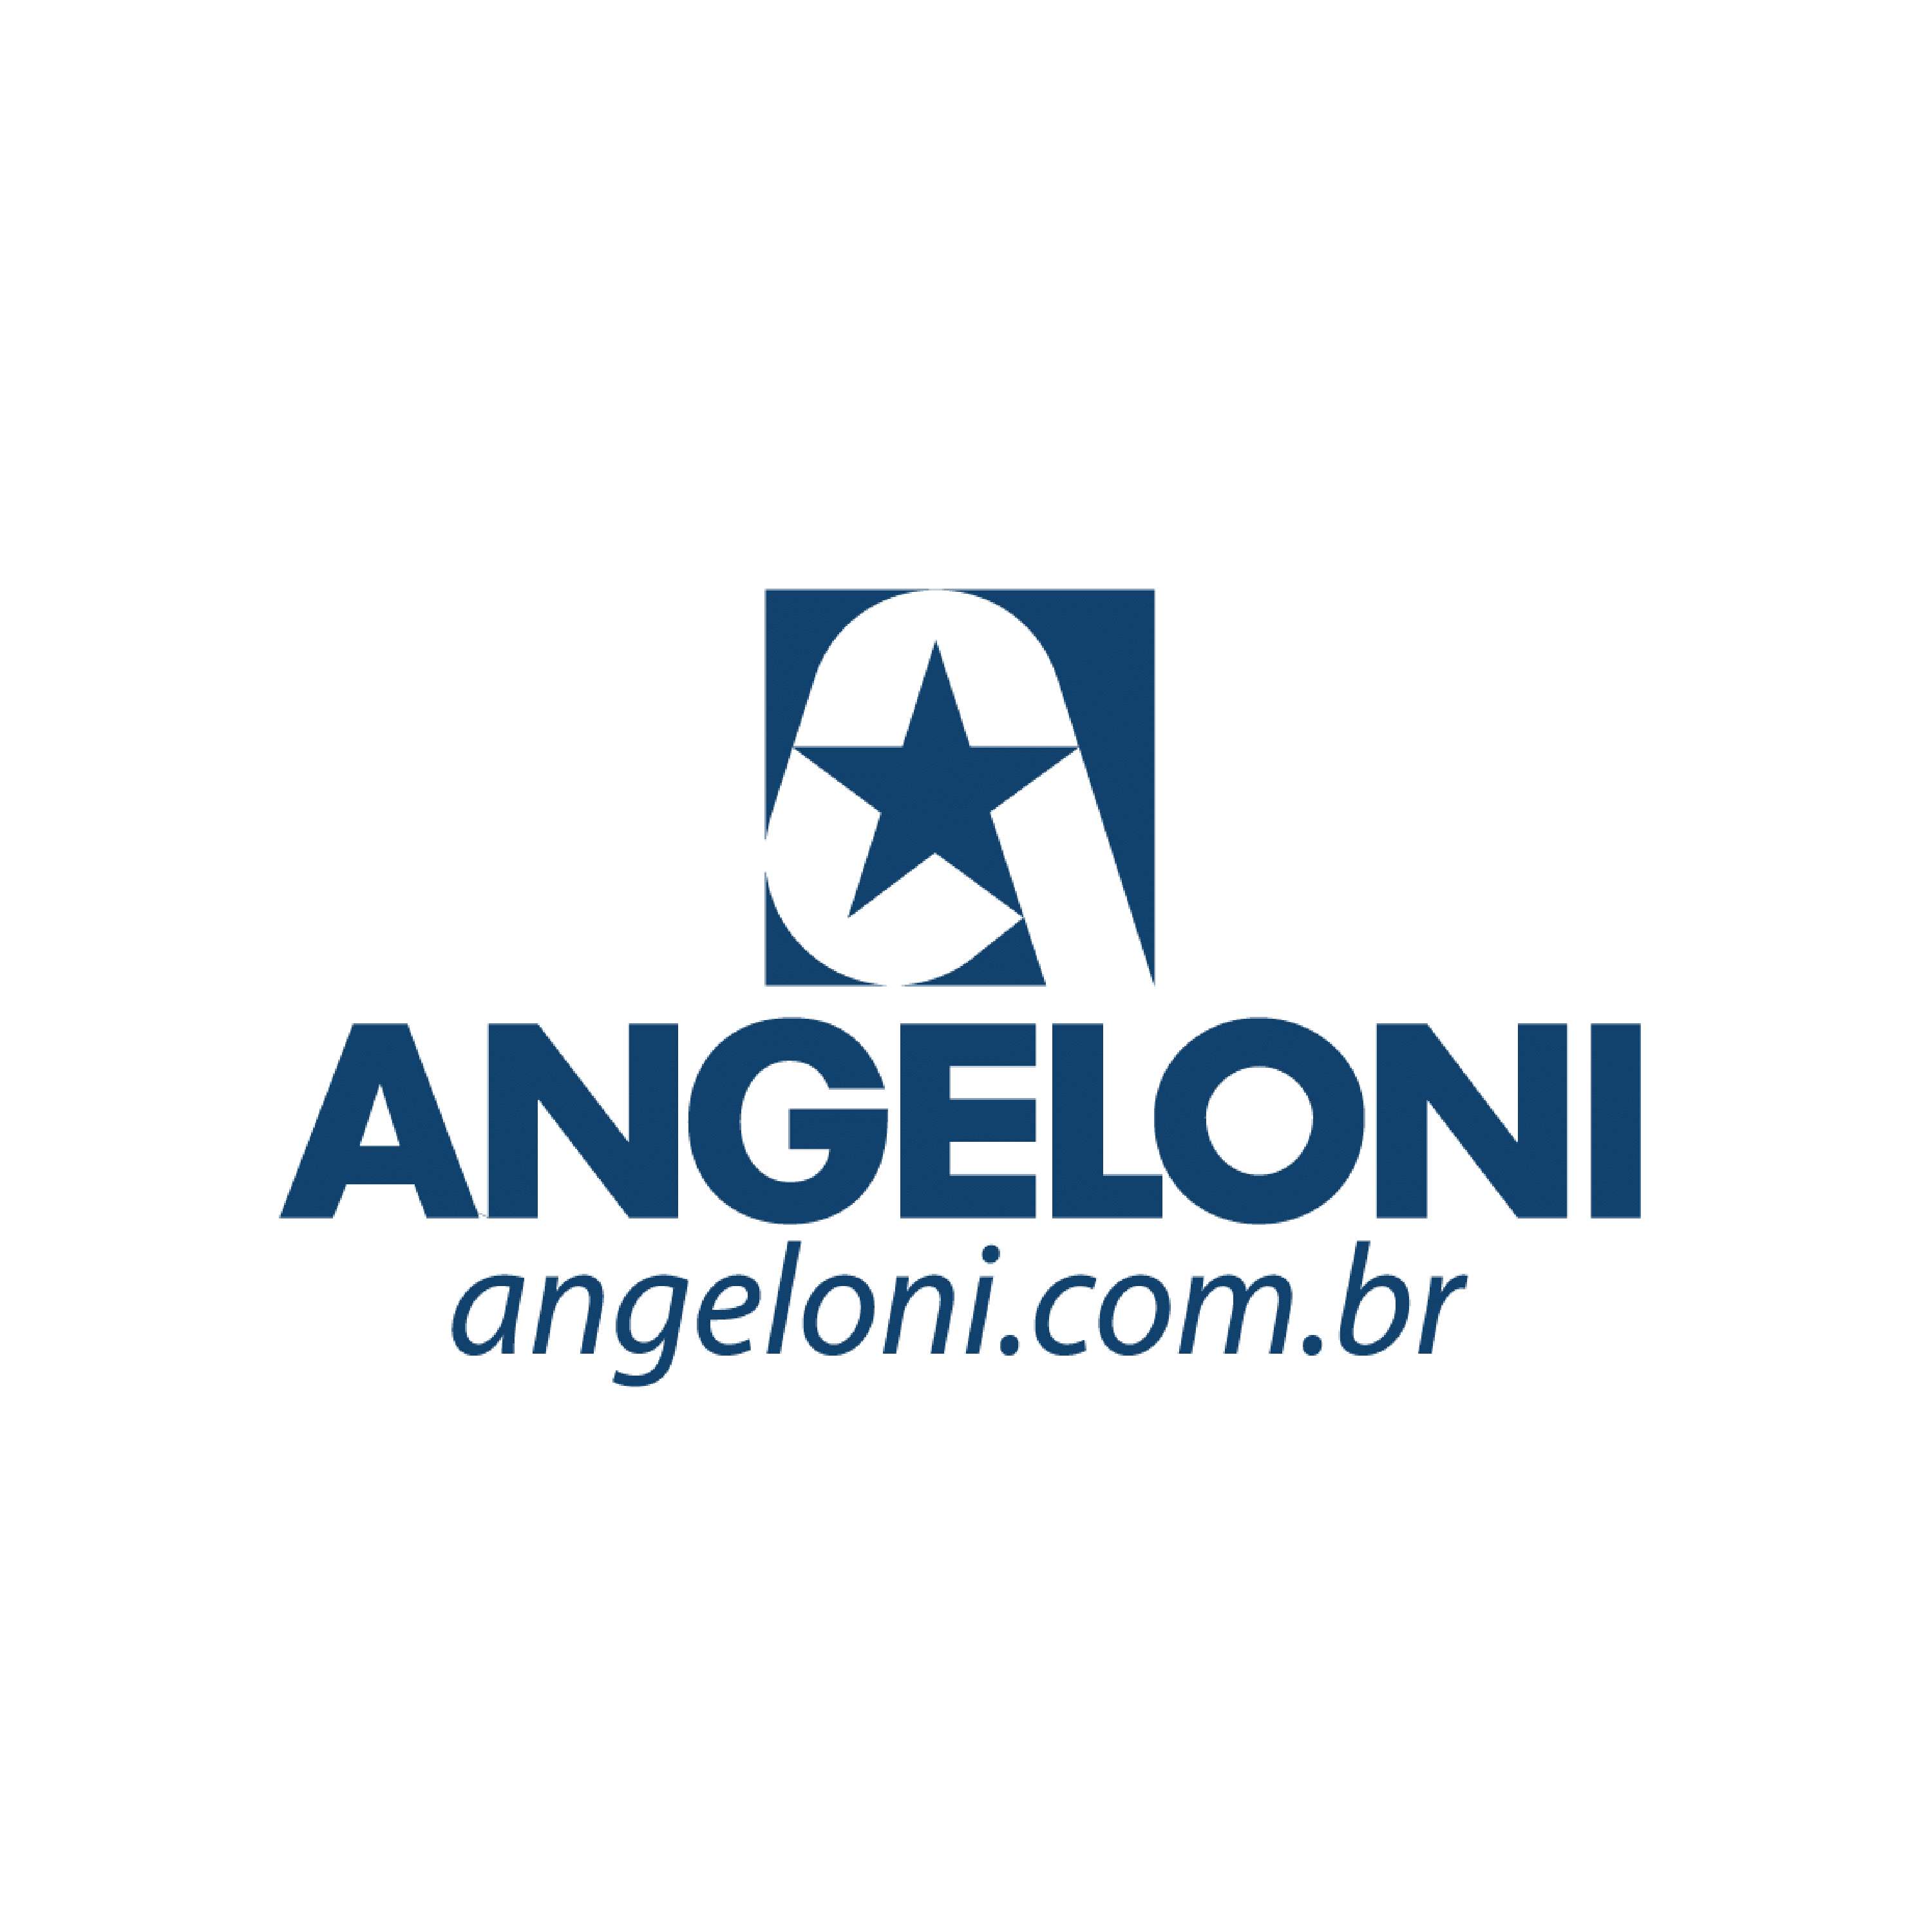 Angeloni - LOGO-1